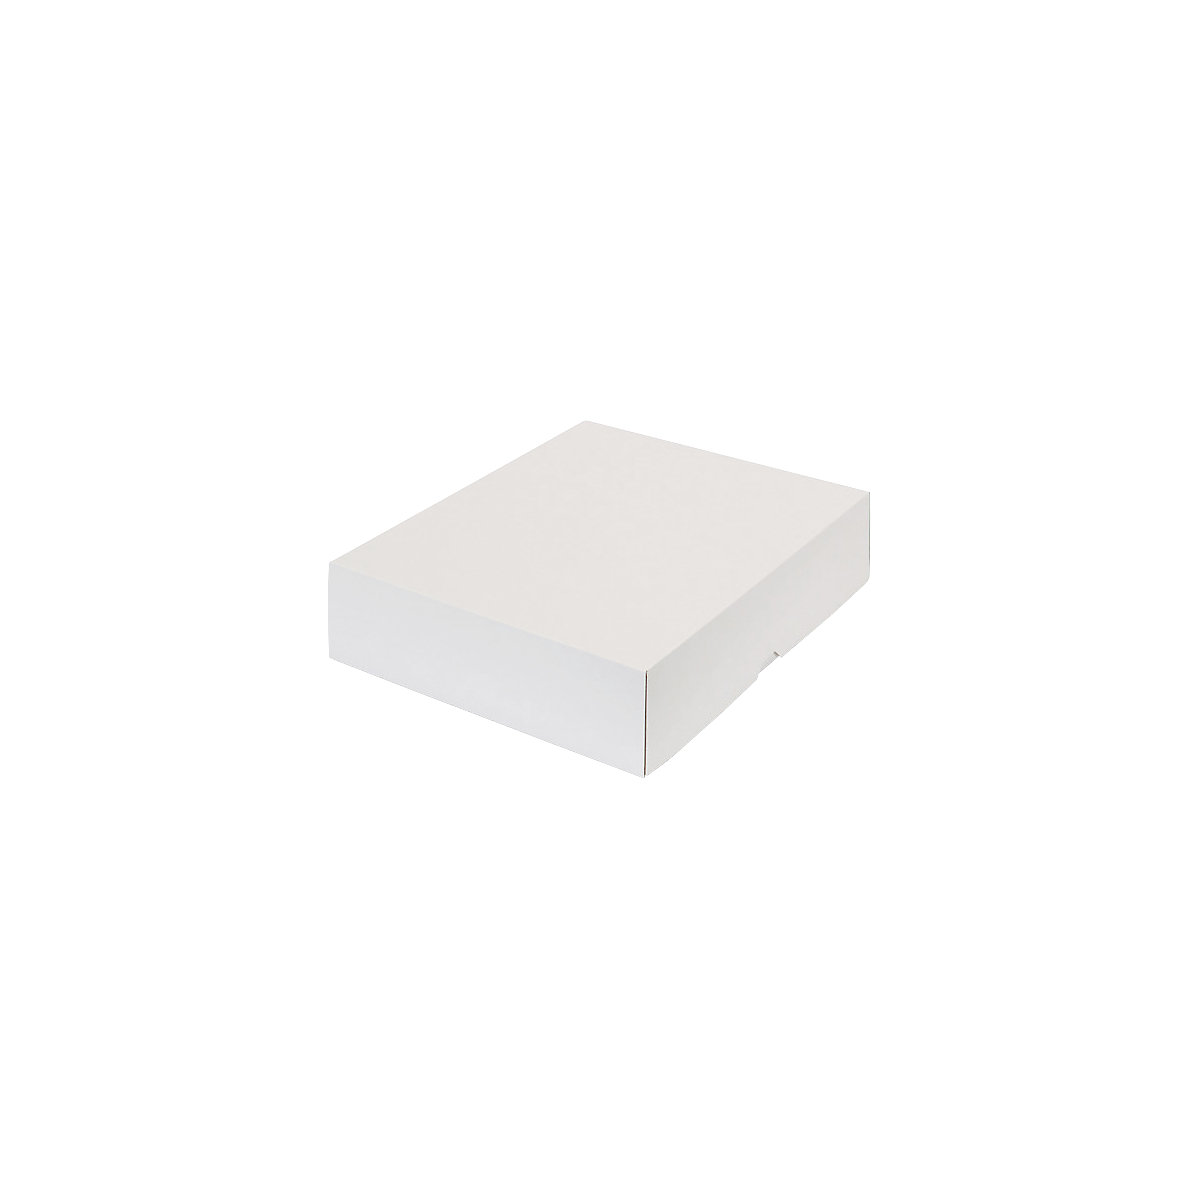 Stülpdeckelkarton, zweiteilig, Innenmaße 355 x 275 x 80 mm, B4, weiß, ab 60 Stk-29